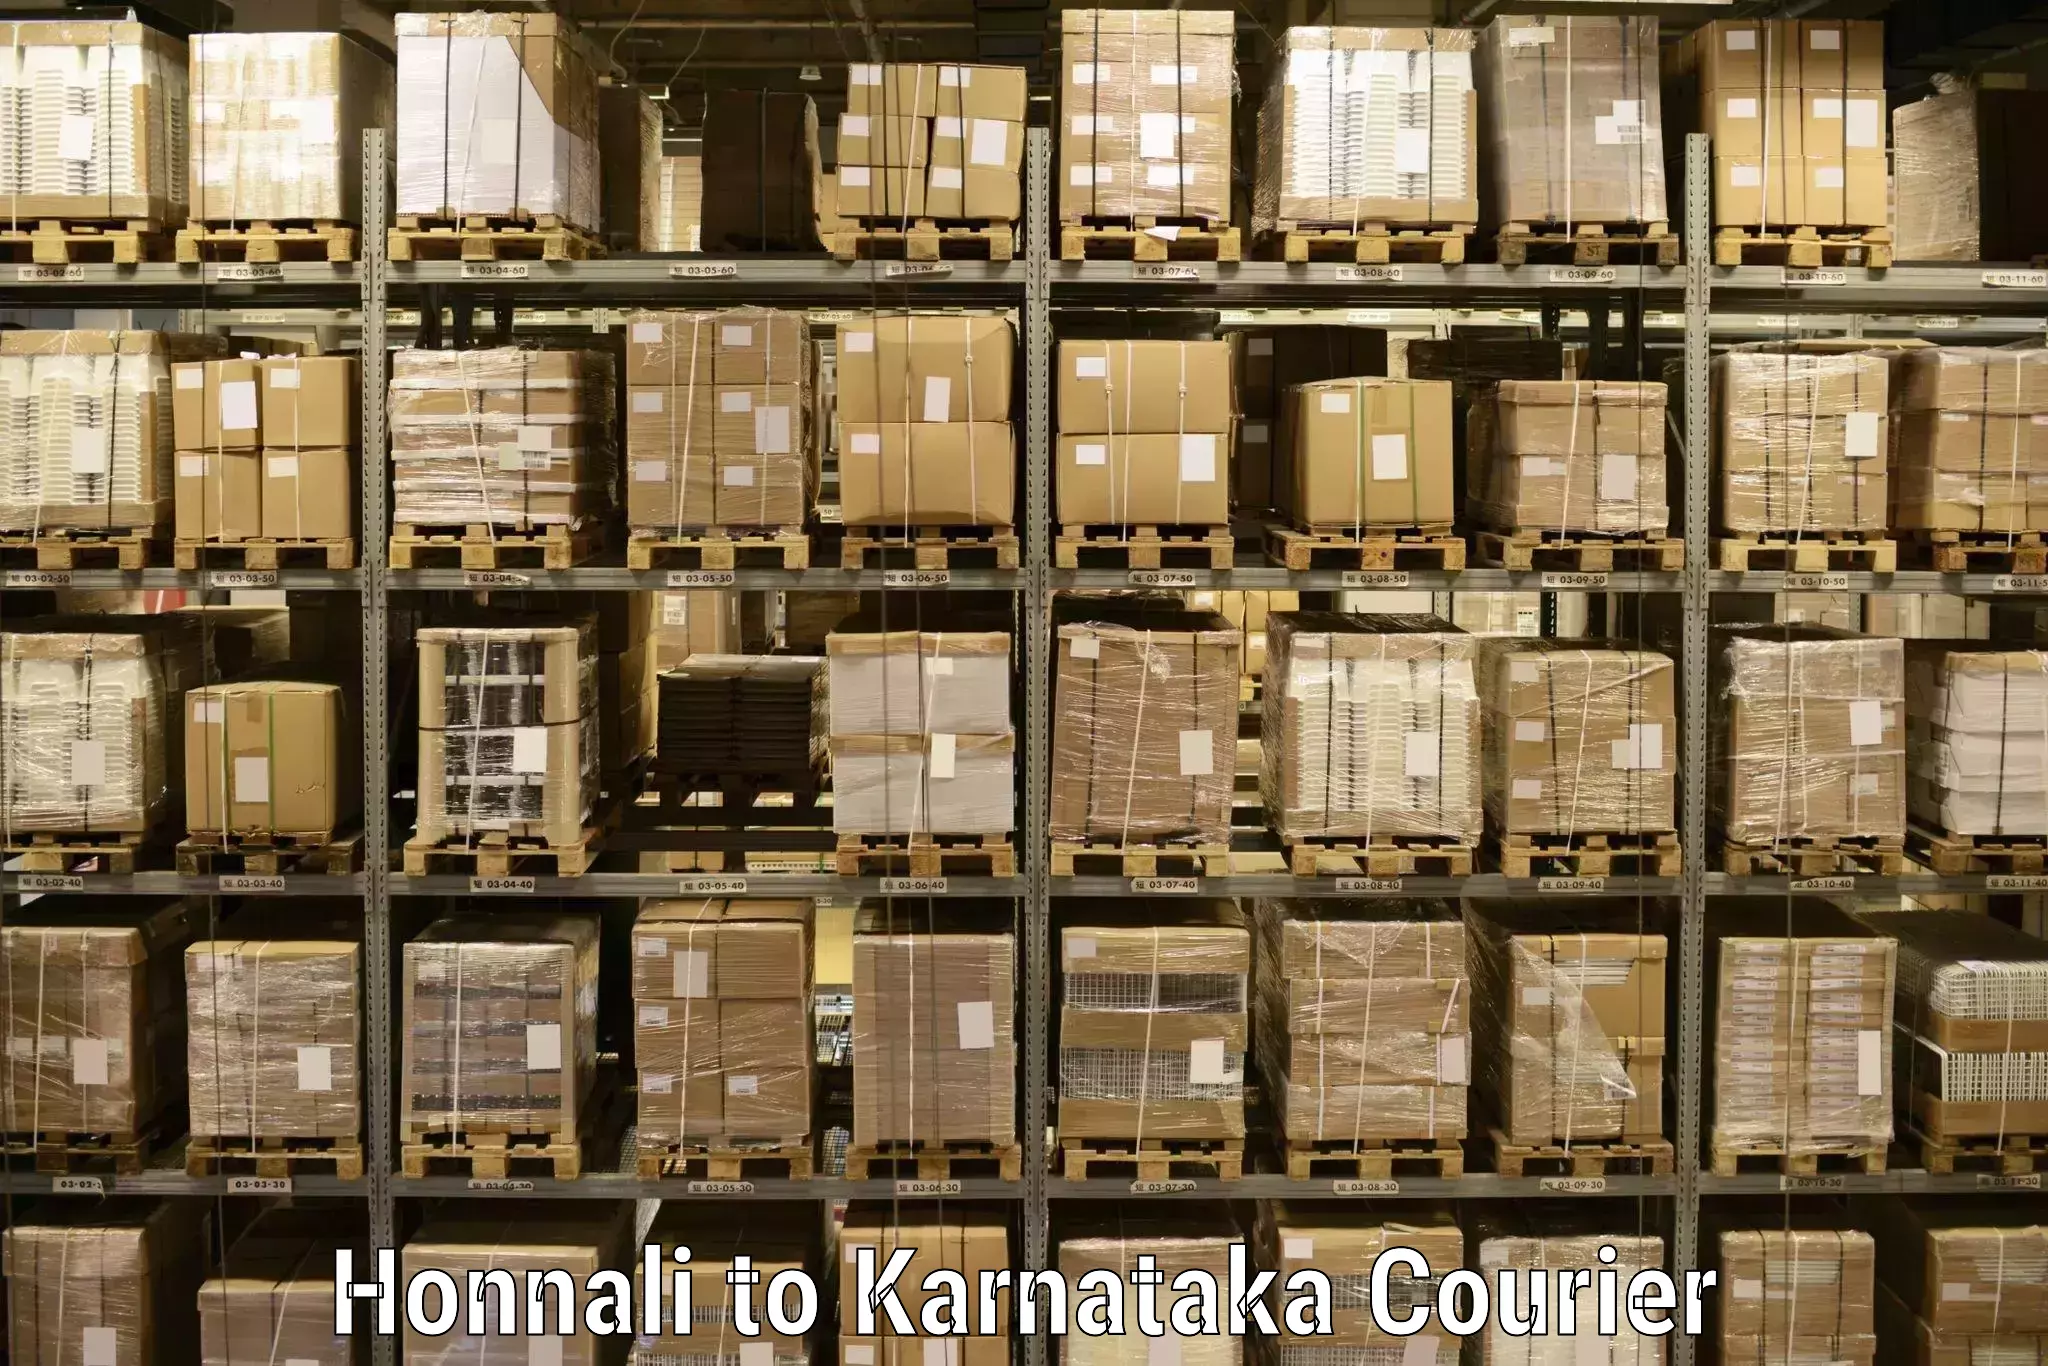 Courier service comparison Honnali to Kalasa